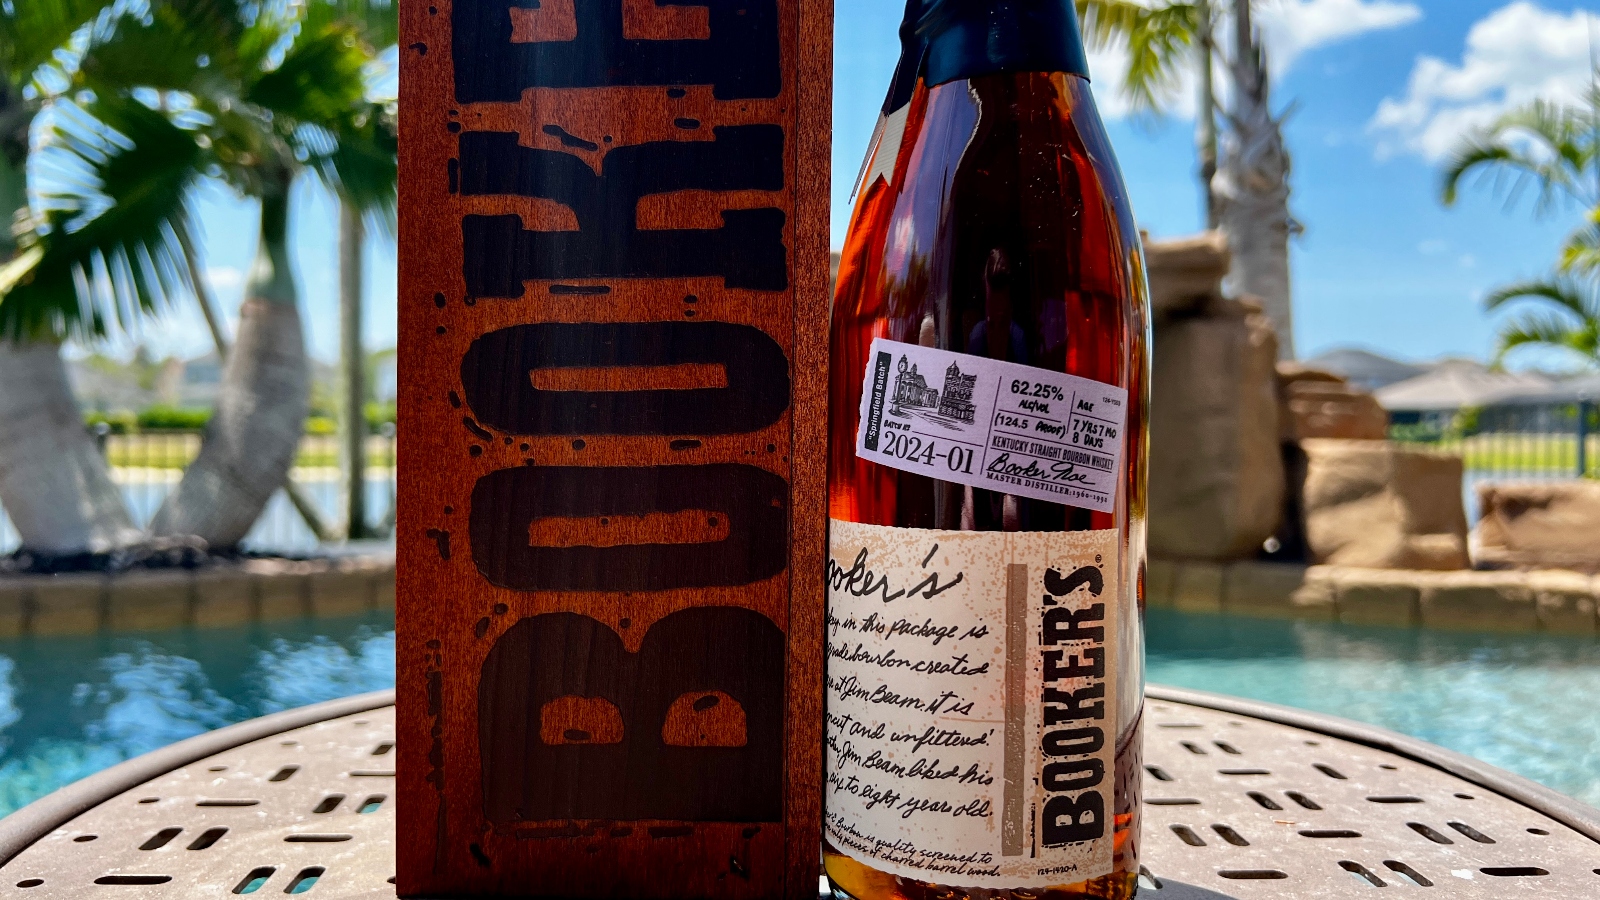 Booker's Bourbon Springfield Batch release